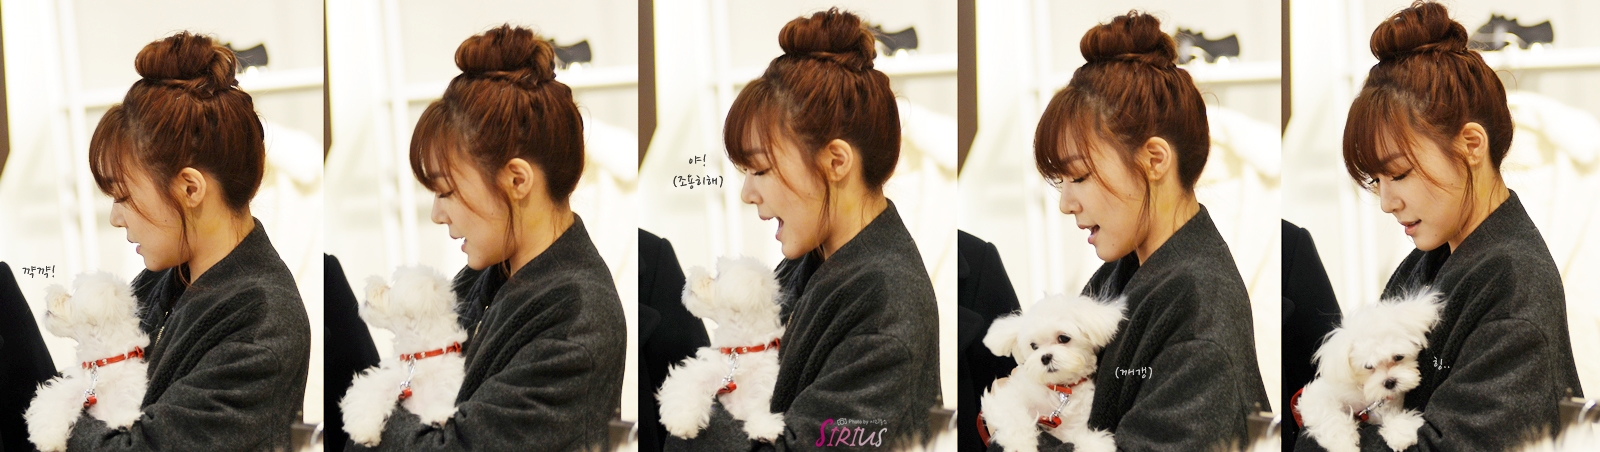 [PIC][28-11-2013]Tiffany ghé thăm cửa hàng "QUA" ở Hyundai Department Store vào trưa nay - Page 2 2629DC46529757160AD9FA